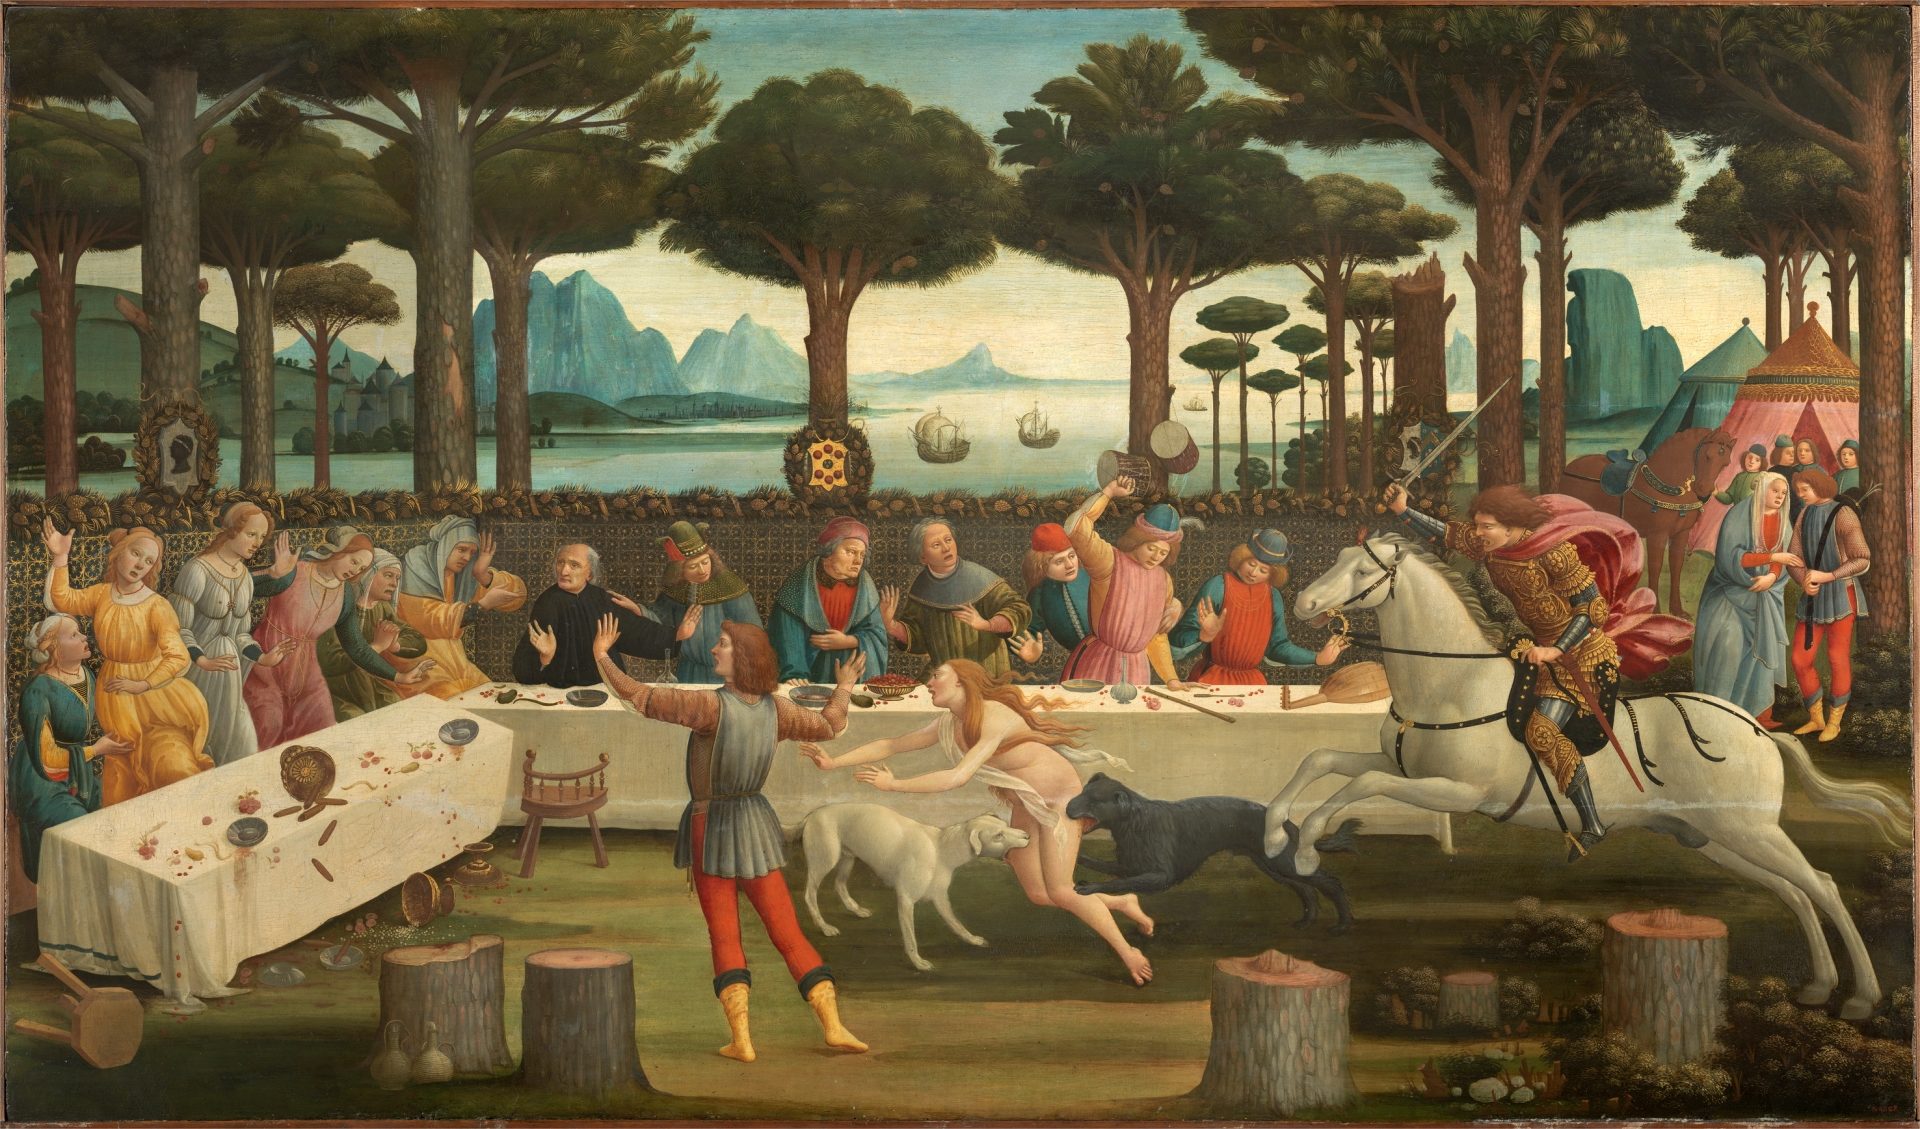 Daha yıllarca hatırlayacağımız CORONA günlerini ev hapsinde, izolasyonda geçirirken, insanlığın tarihte yaşadığı VEBA salgınlarını ve hikayelerini okumak, belki zamanınızı daha güzel geçirmenize vesile olur.  - Sandro Botticelli Decameron 1487